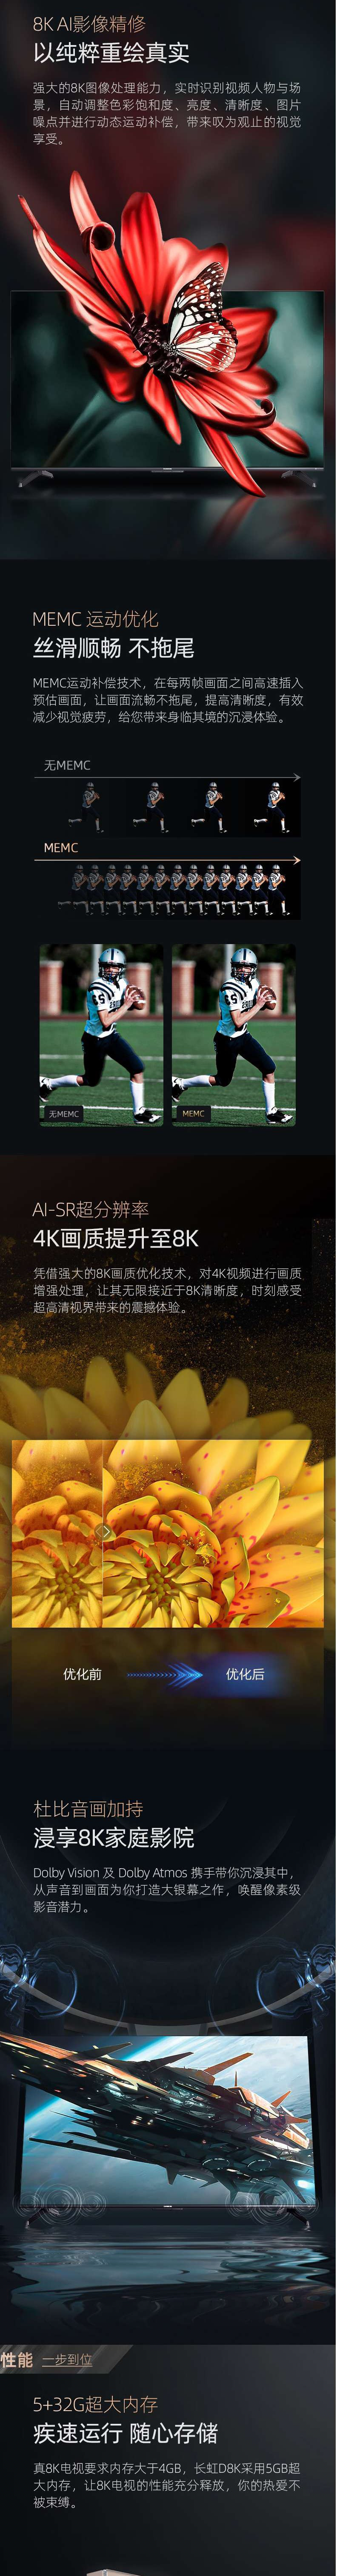 长虹/CHANGHONG 65D8K 65英寸 全程8K 超高清 平板LED液晶电视机